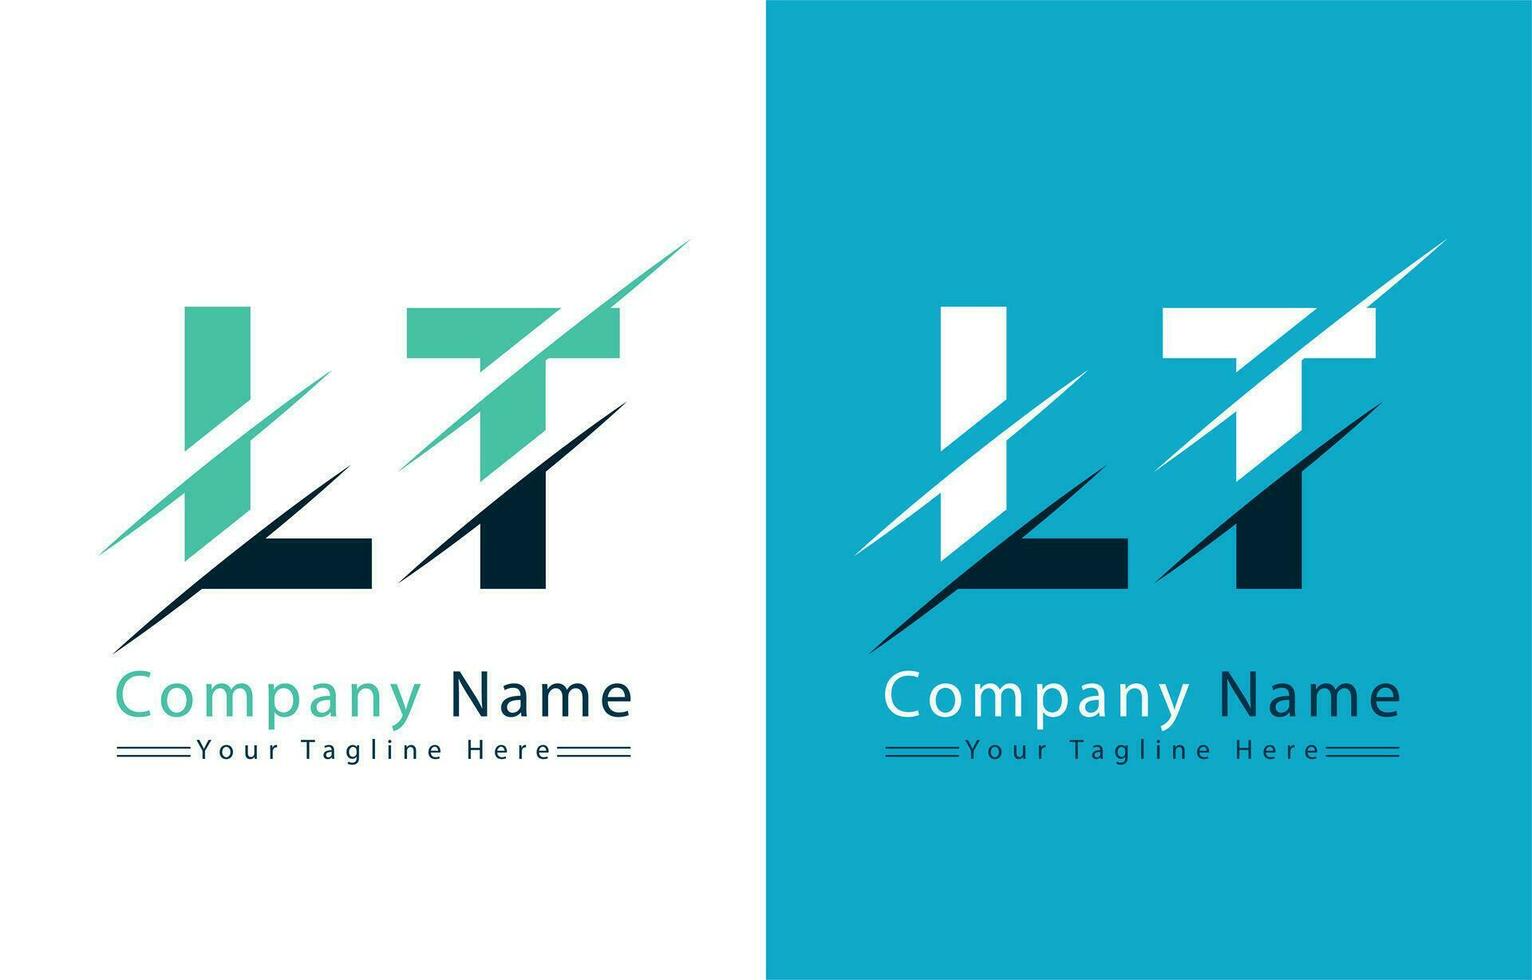 LT Letter Logo Design Template. Vector Logo Illustration